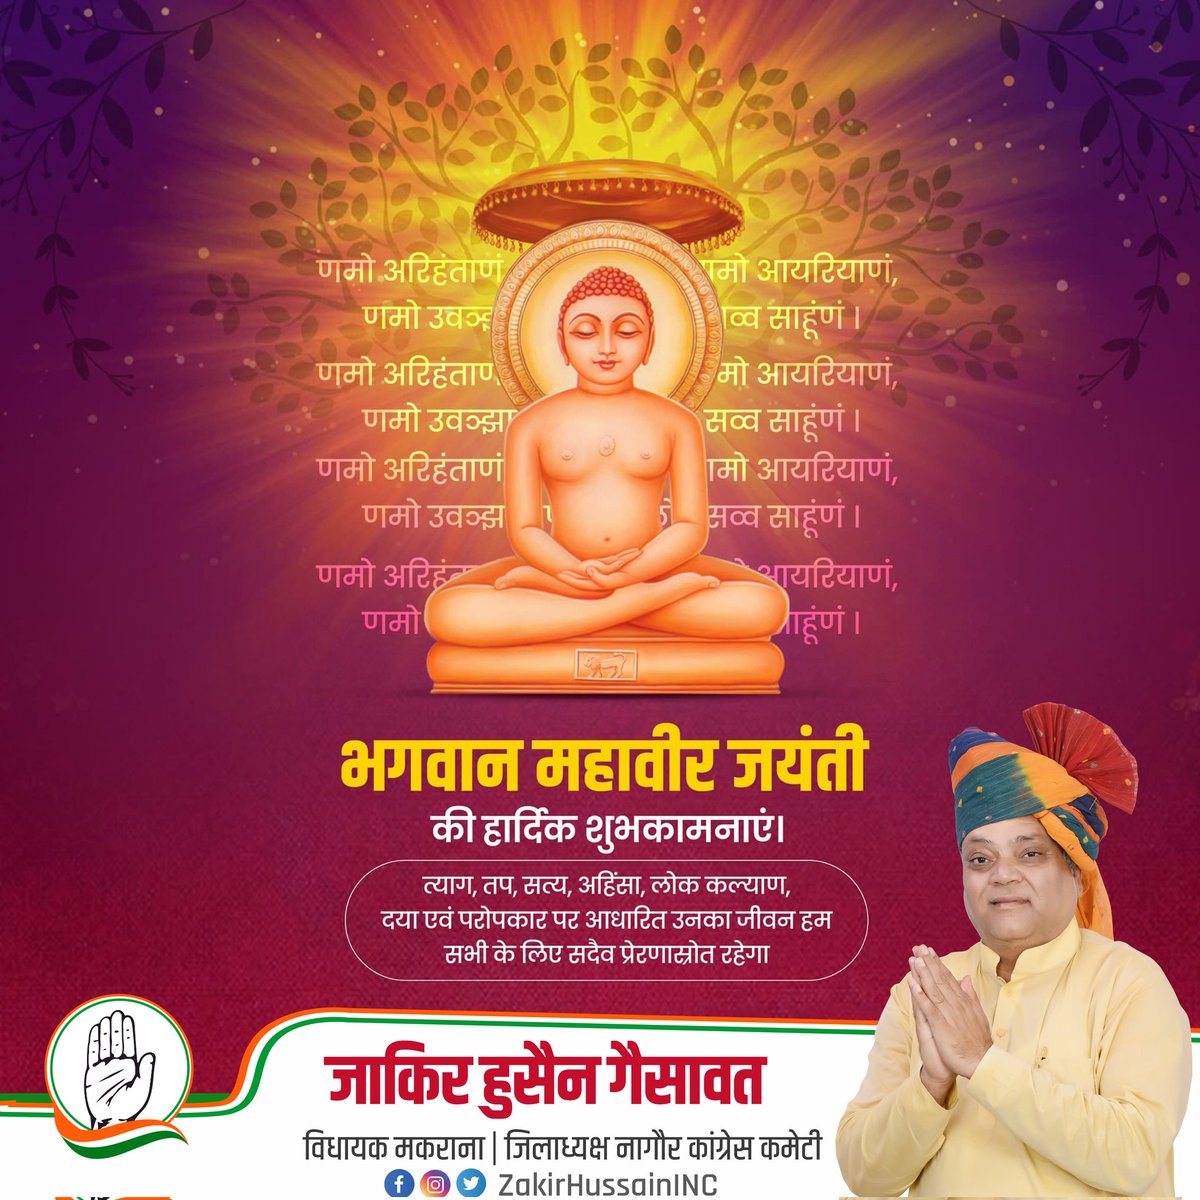 अहिंसा को अपना सर्वोच्च सिद्धांत मानने वाले भगवान महावीर जी की जयंती पर सभी प्रदेशवासियों को हार्दिक शुभकामनाएं। #MahaveerJayanti